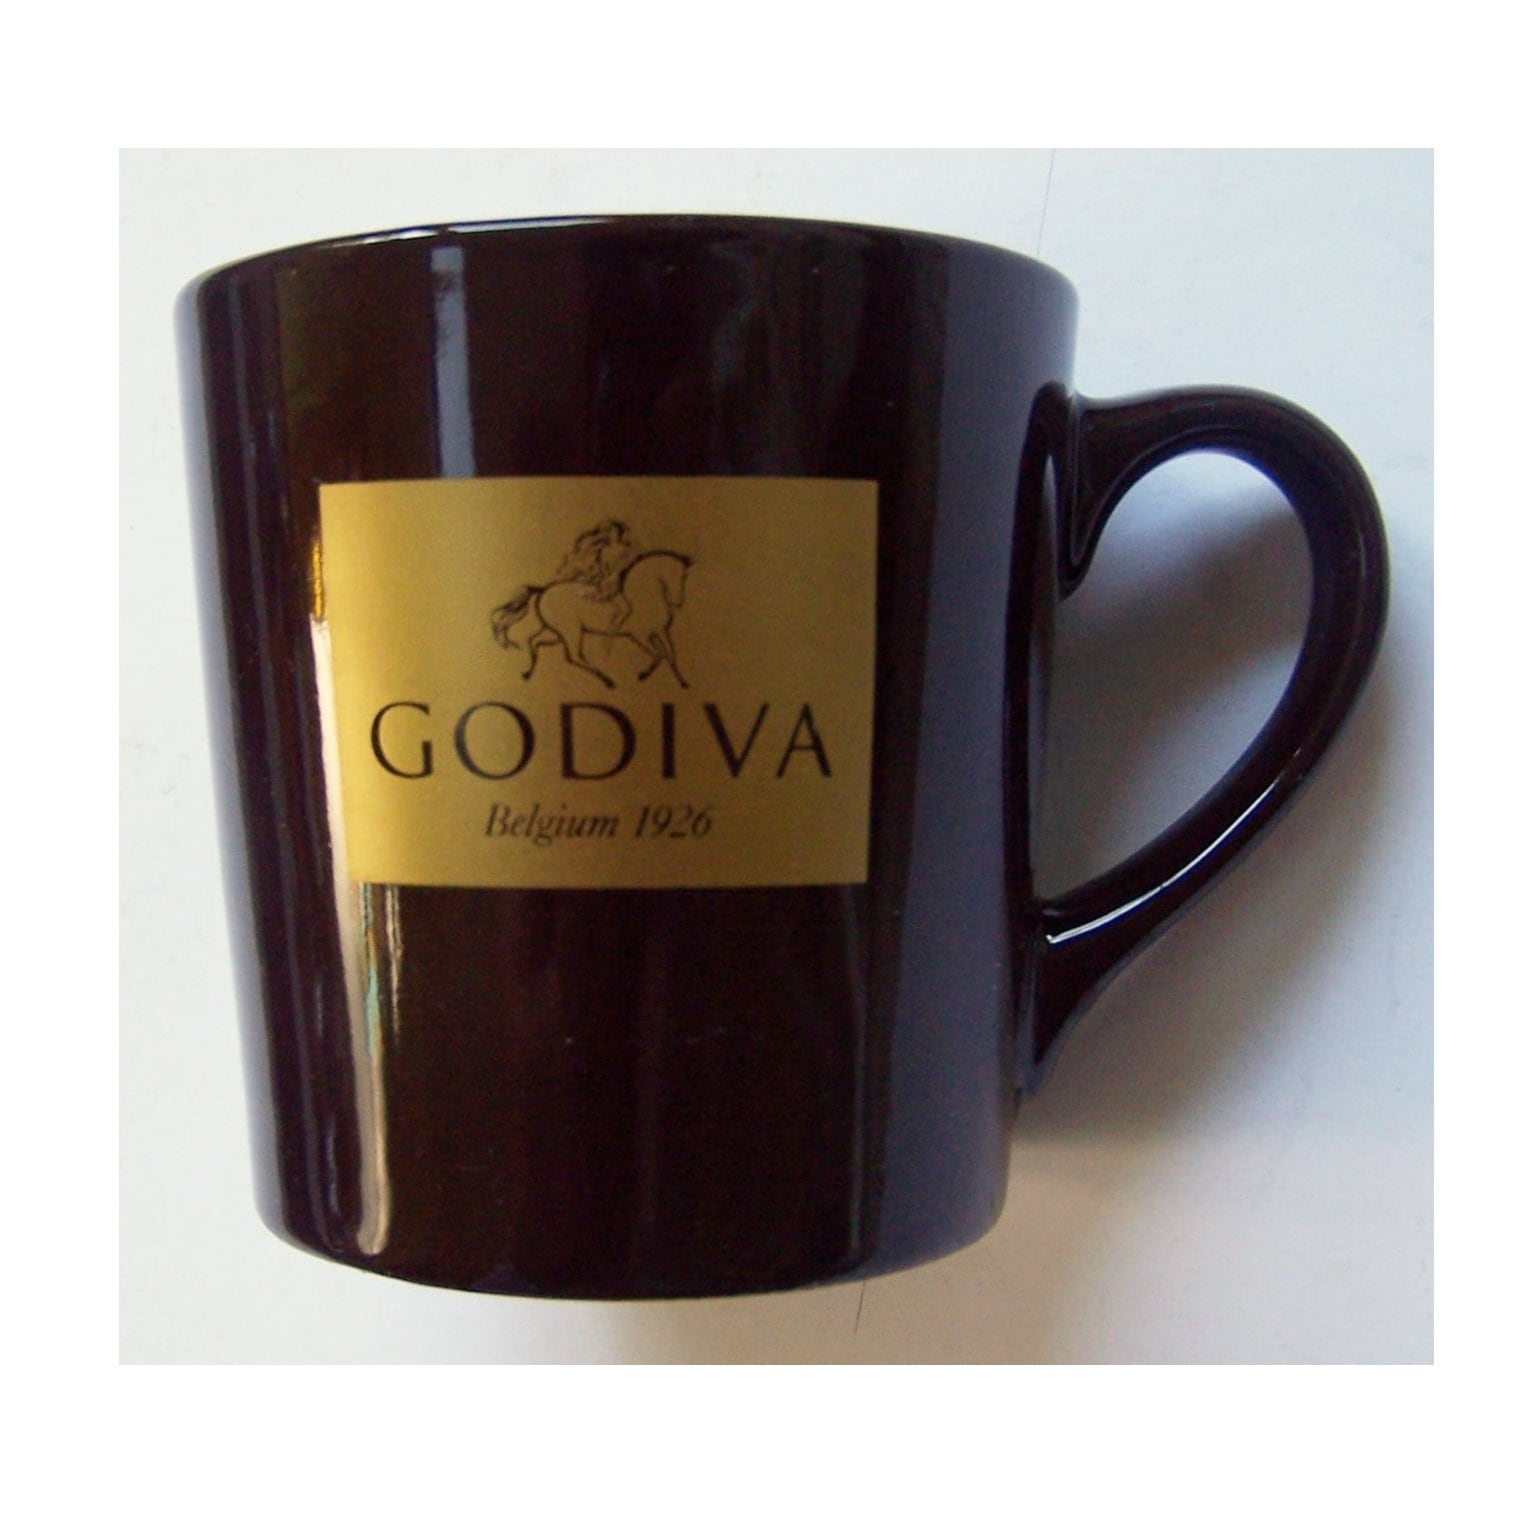 Godiva Chocolate Truffle Coffee French Press and Mugs Gift Set